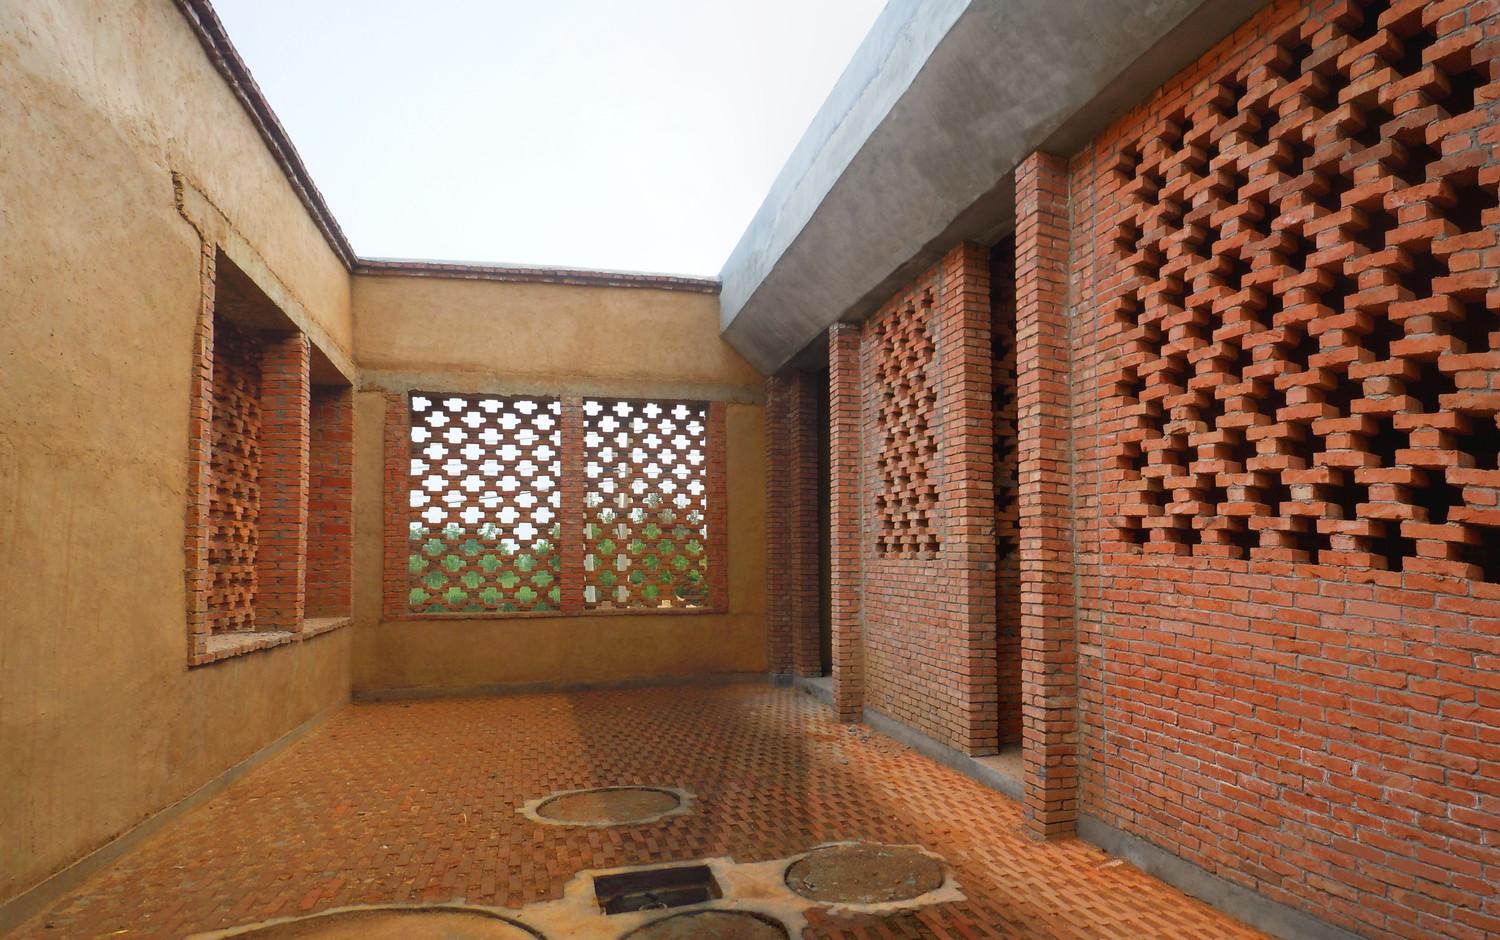 Courtyard with underground biogas system